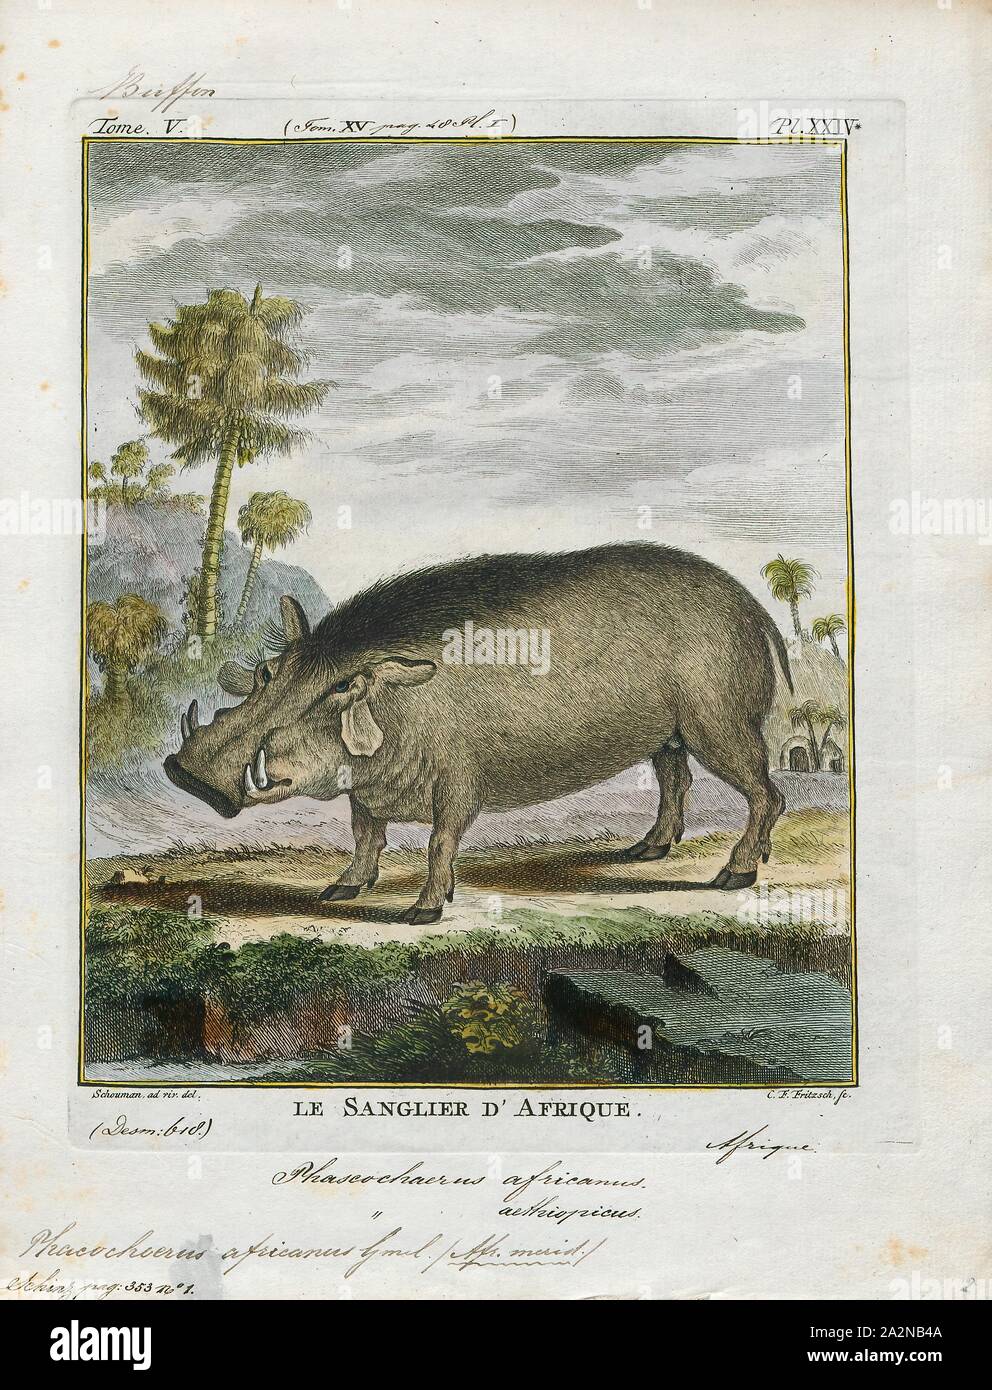 Phacochoerus Africanus, Drucken, die gemeinsame Warzenschwein (Phacochoerus africanus) ist eine wilde Mitglied der Familie der Schweine (Suidae) im Grünland, Savanne gefunden, und die Wälder in Afrika südlich der Sahara. In der Vergangenheit war es häufig als Unterart von S. aethiopicus behandelt, aber heute, dass Wissenschaftlicher Name in die Wüste Warzenschwein im Norden von Kenia, Somalia beschränkt ist, und östlichen Äthiopien., 1700-1880 Stockfoto